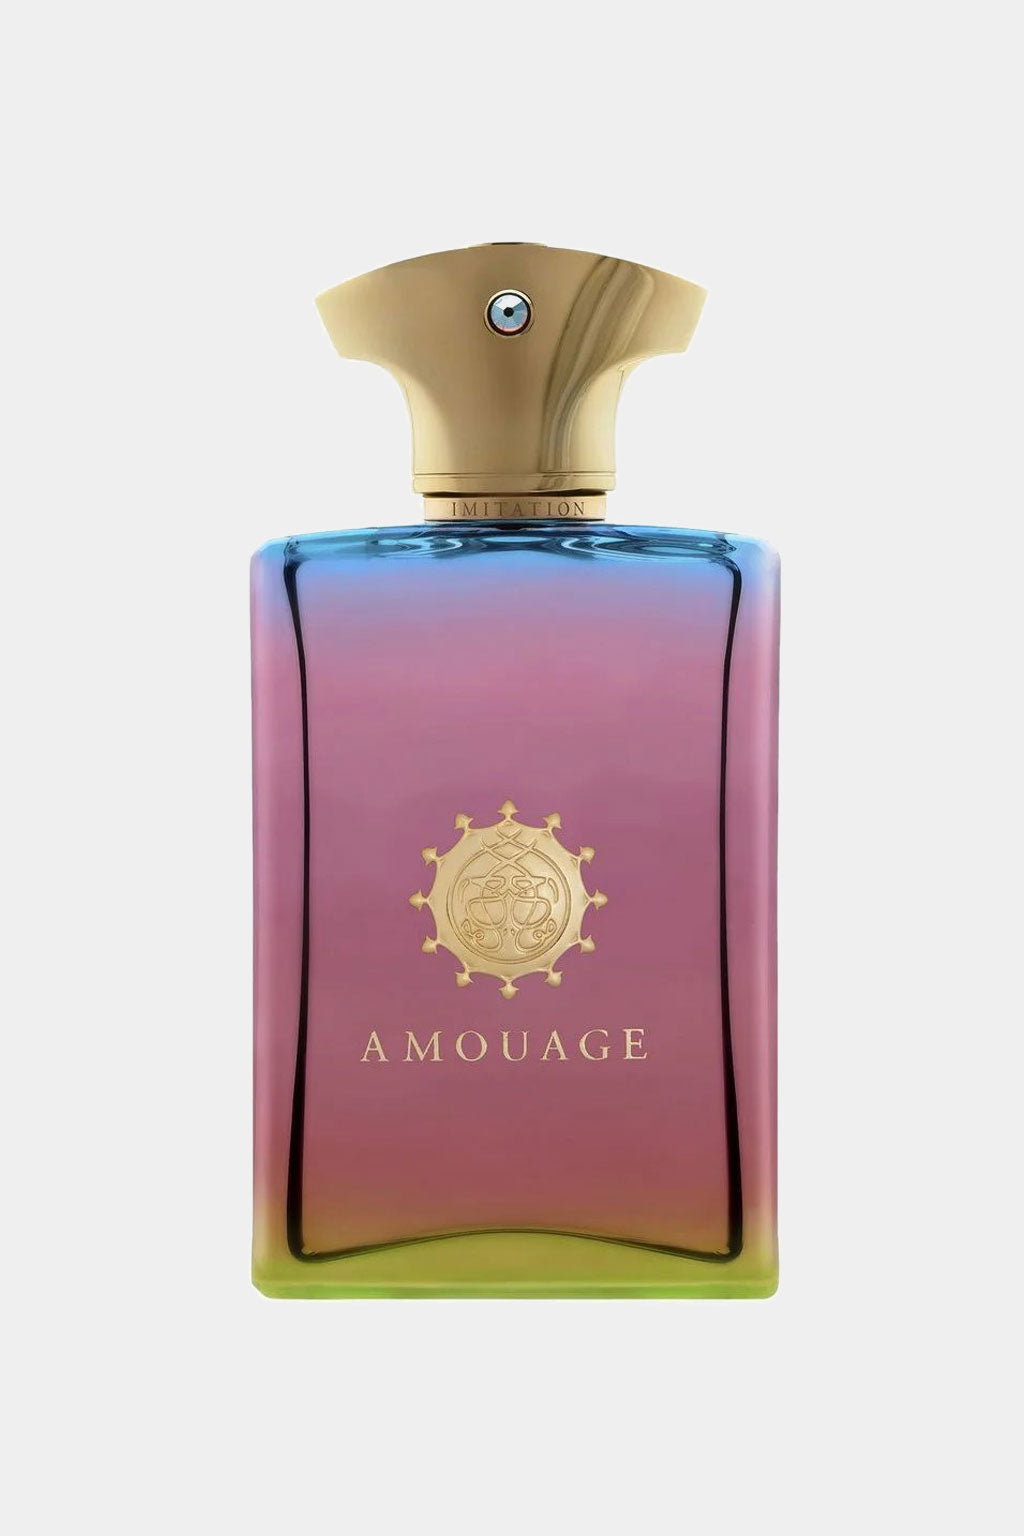 Amouage - Imitation Man Eau de Parfum